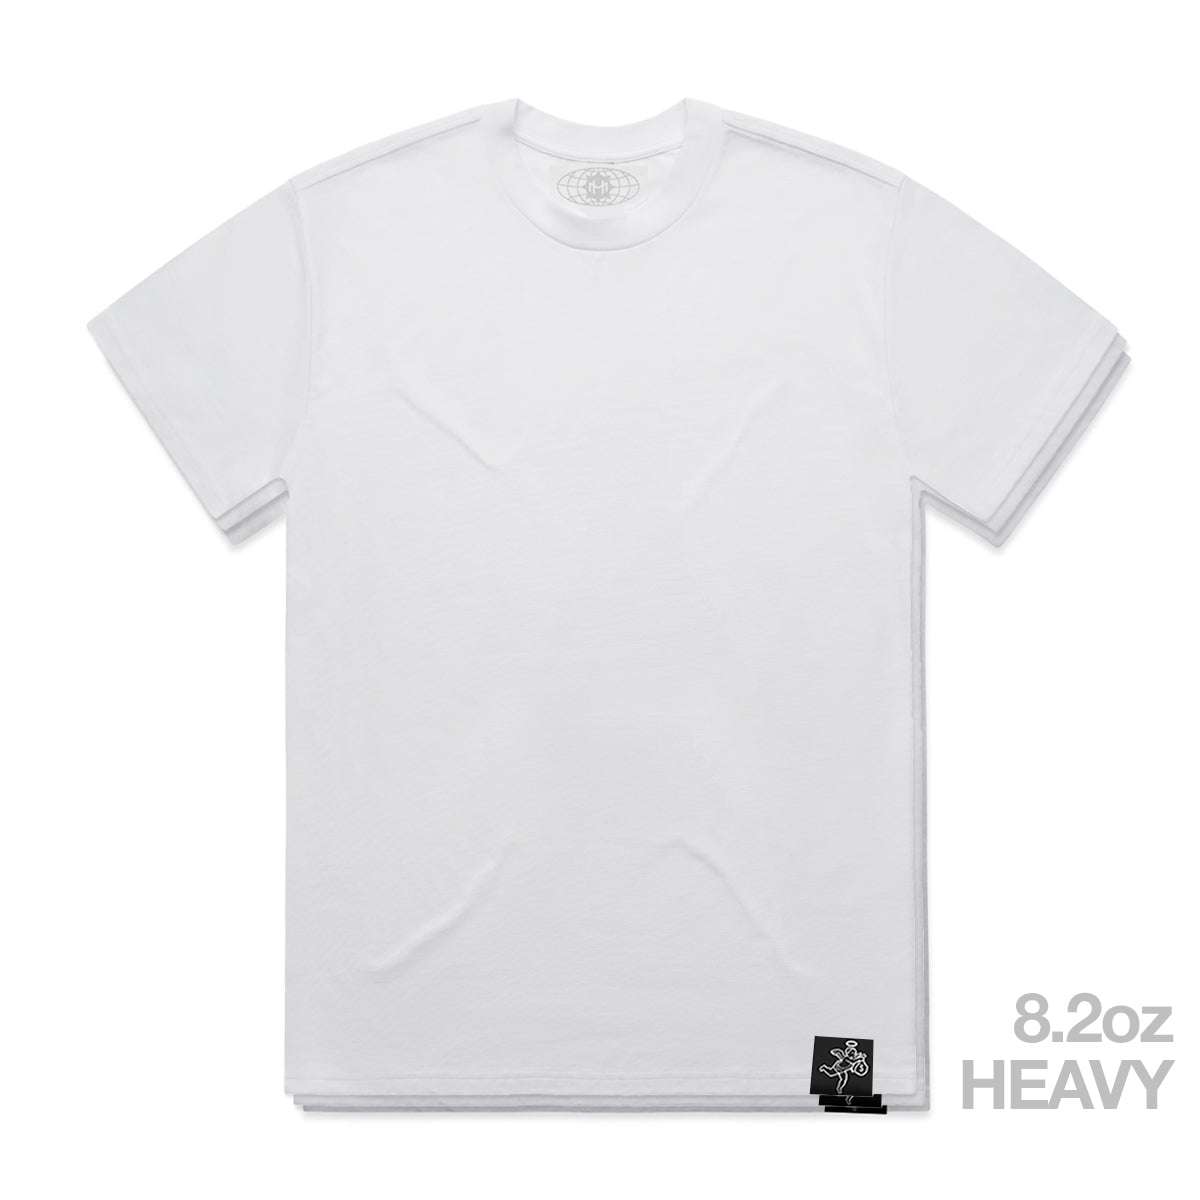 Camiseta blanca pesada - Básica